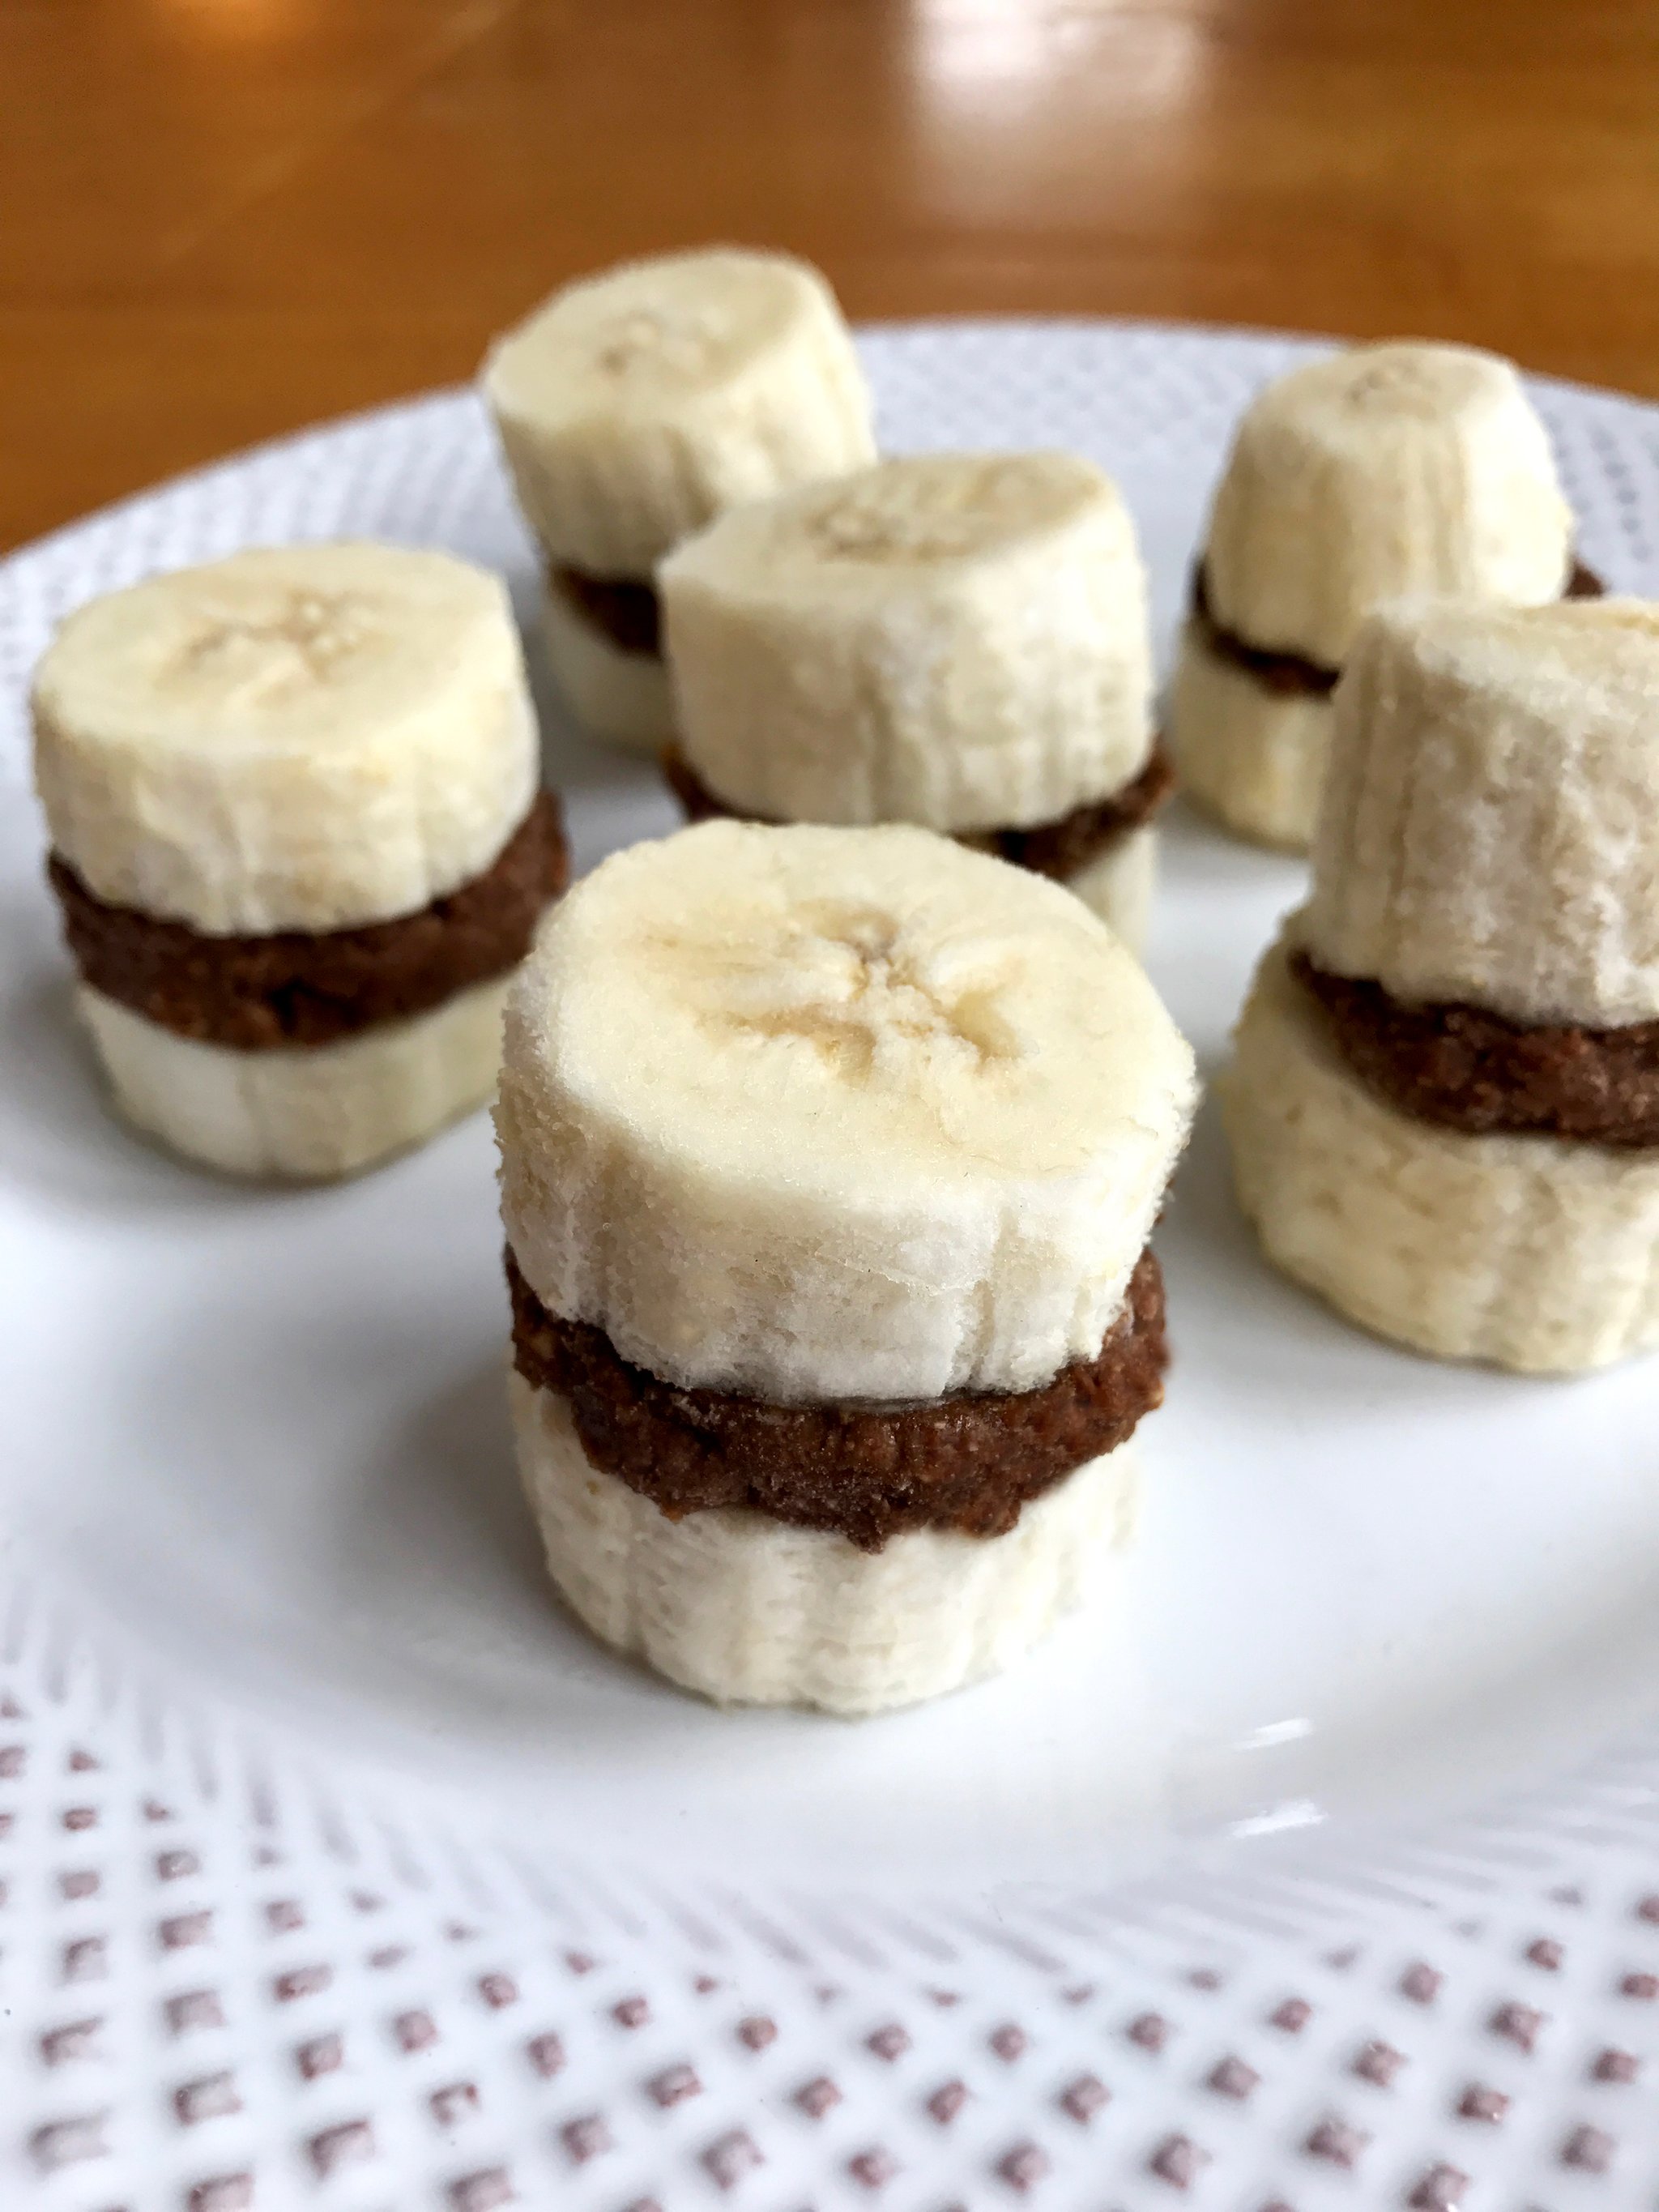 Egyszerű, de nagyszerű nasi: csokis-mogyoróvajas banánfalatok